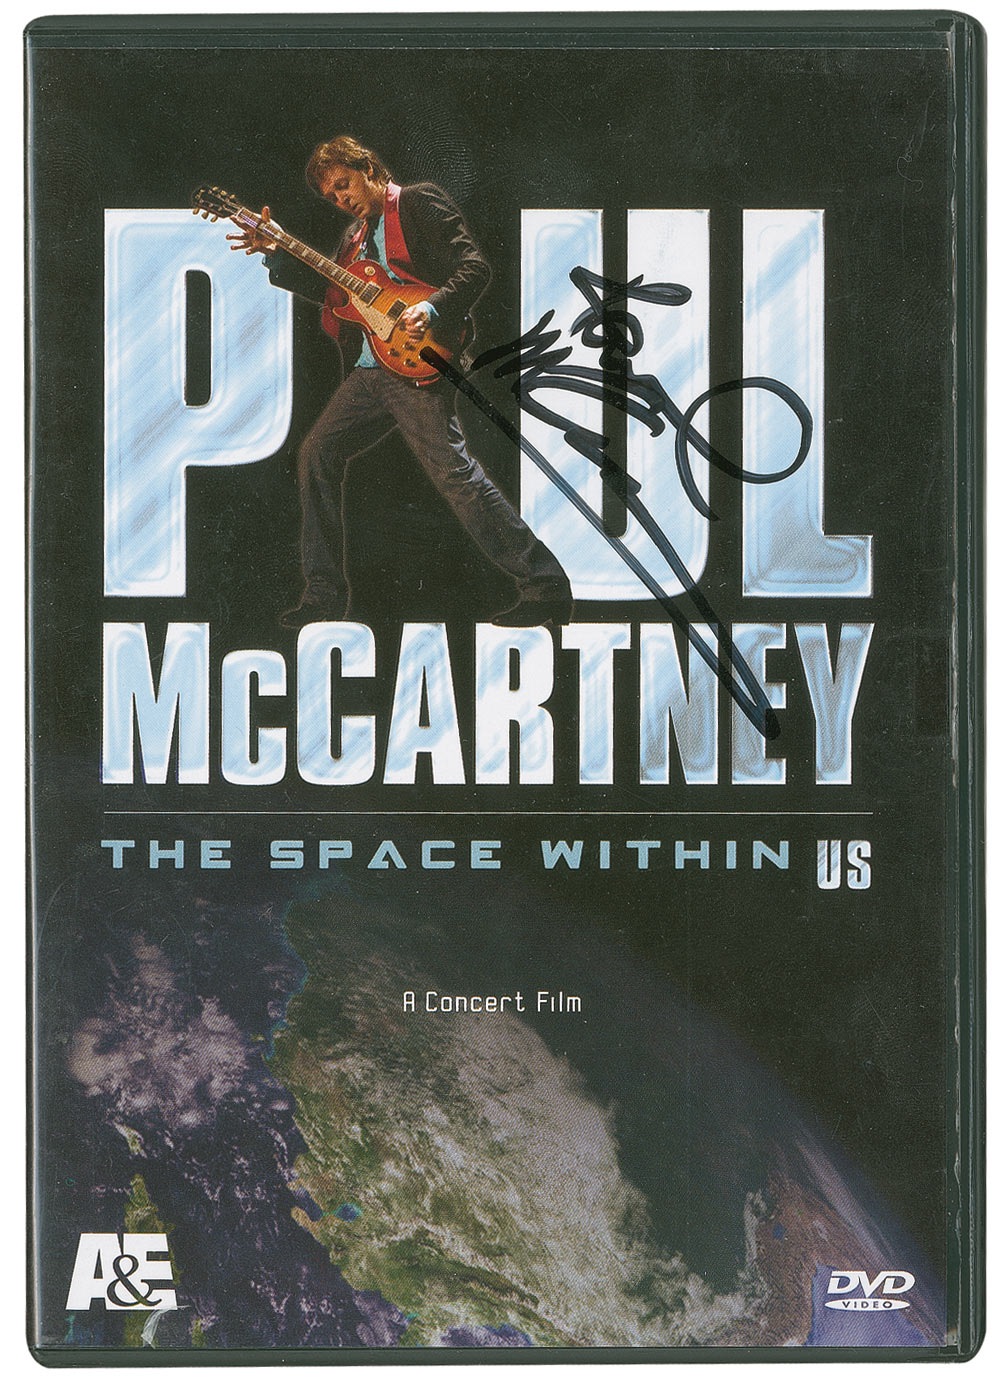 Lot #870 Beatles: Paul McCartney